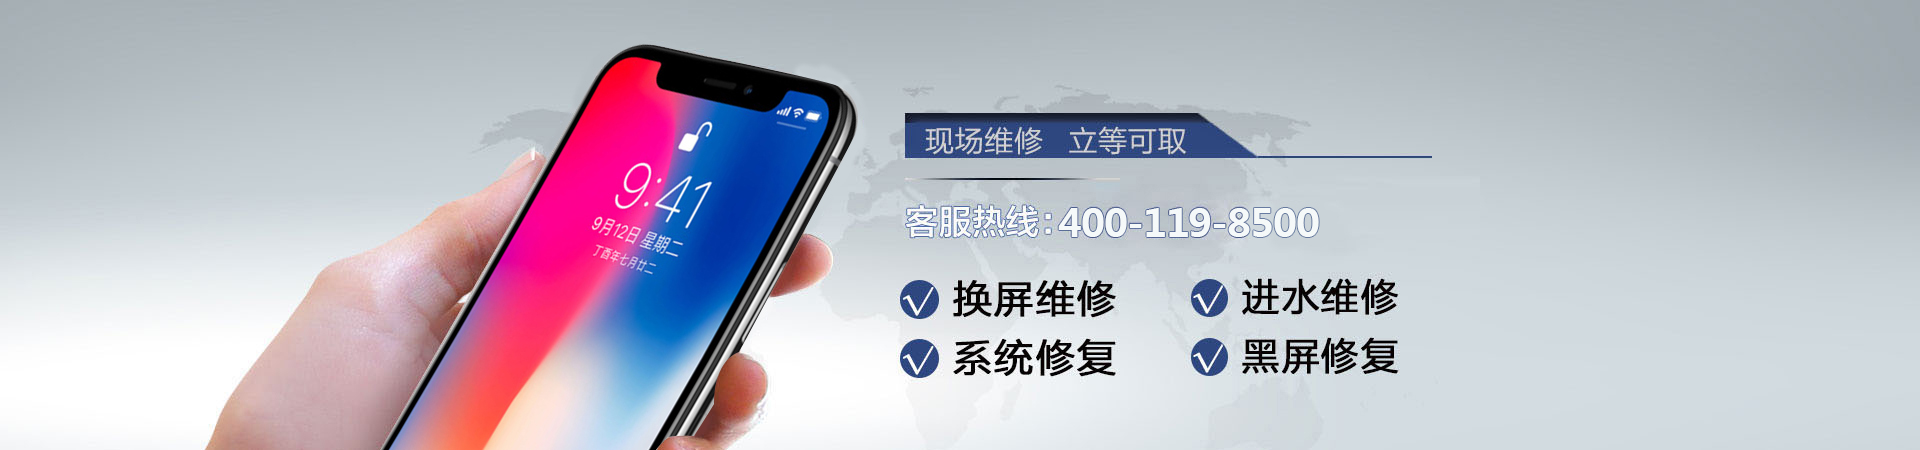 宁波苹果手机维修服务地址查询